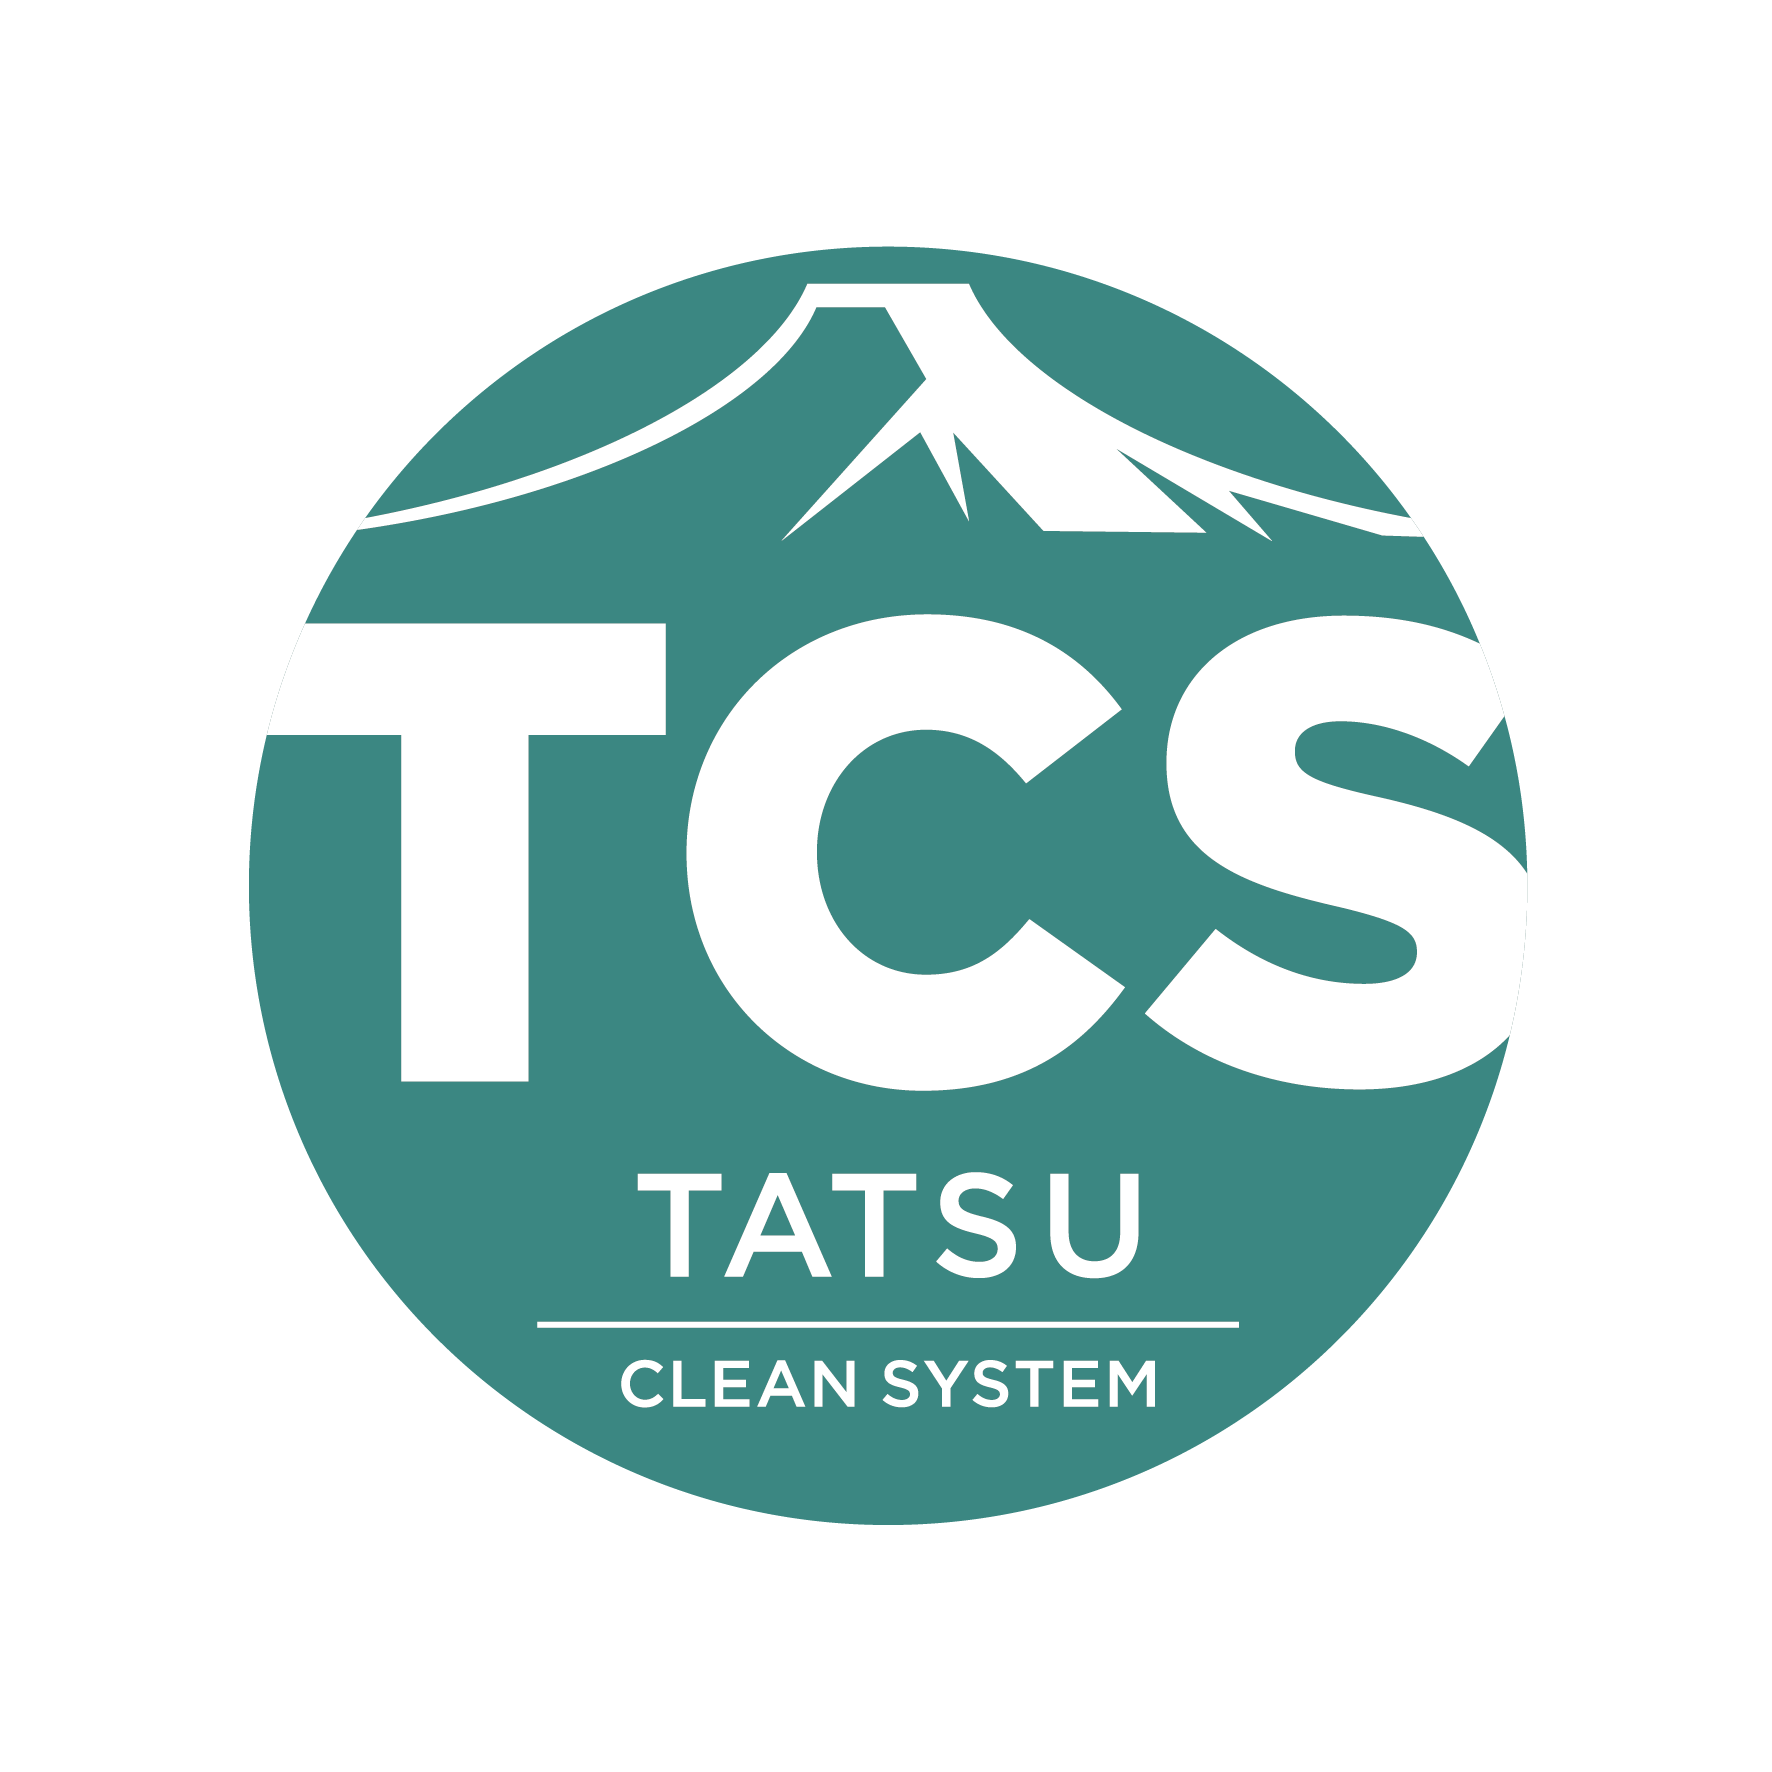 Tatsu Clean System 合同会社